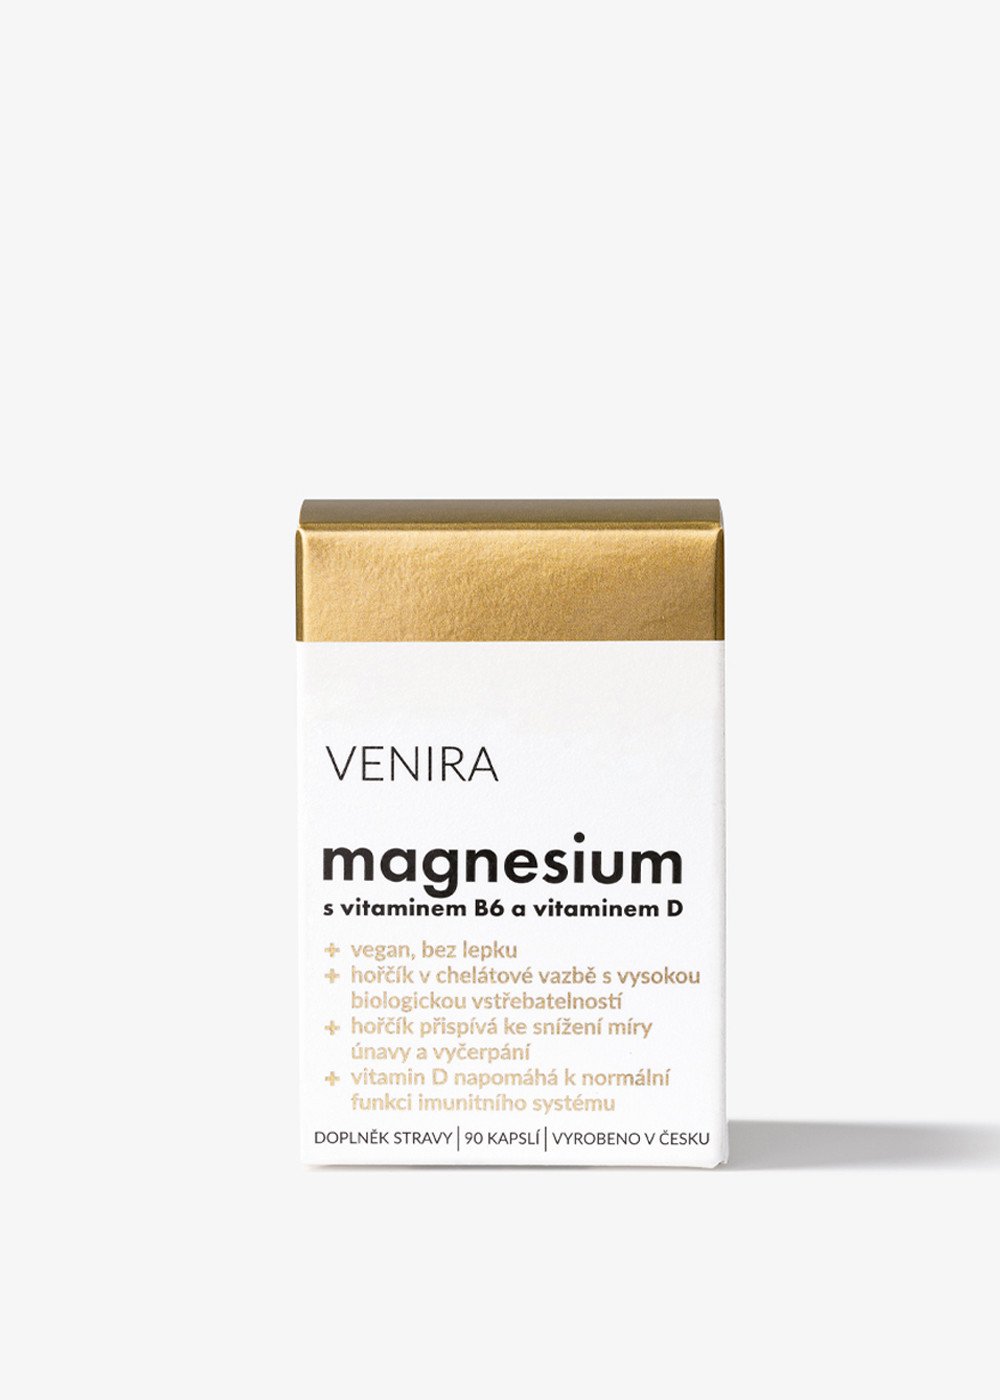 VENIRA magnesium s vitaminem B6 a vitaminem D, 90 kapslí